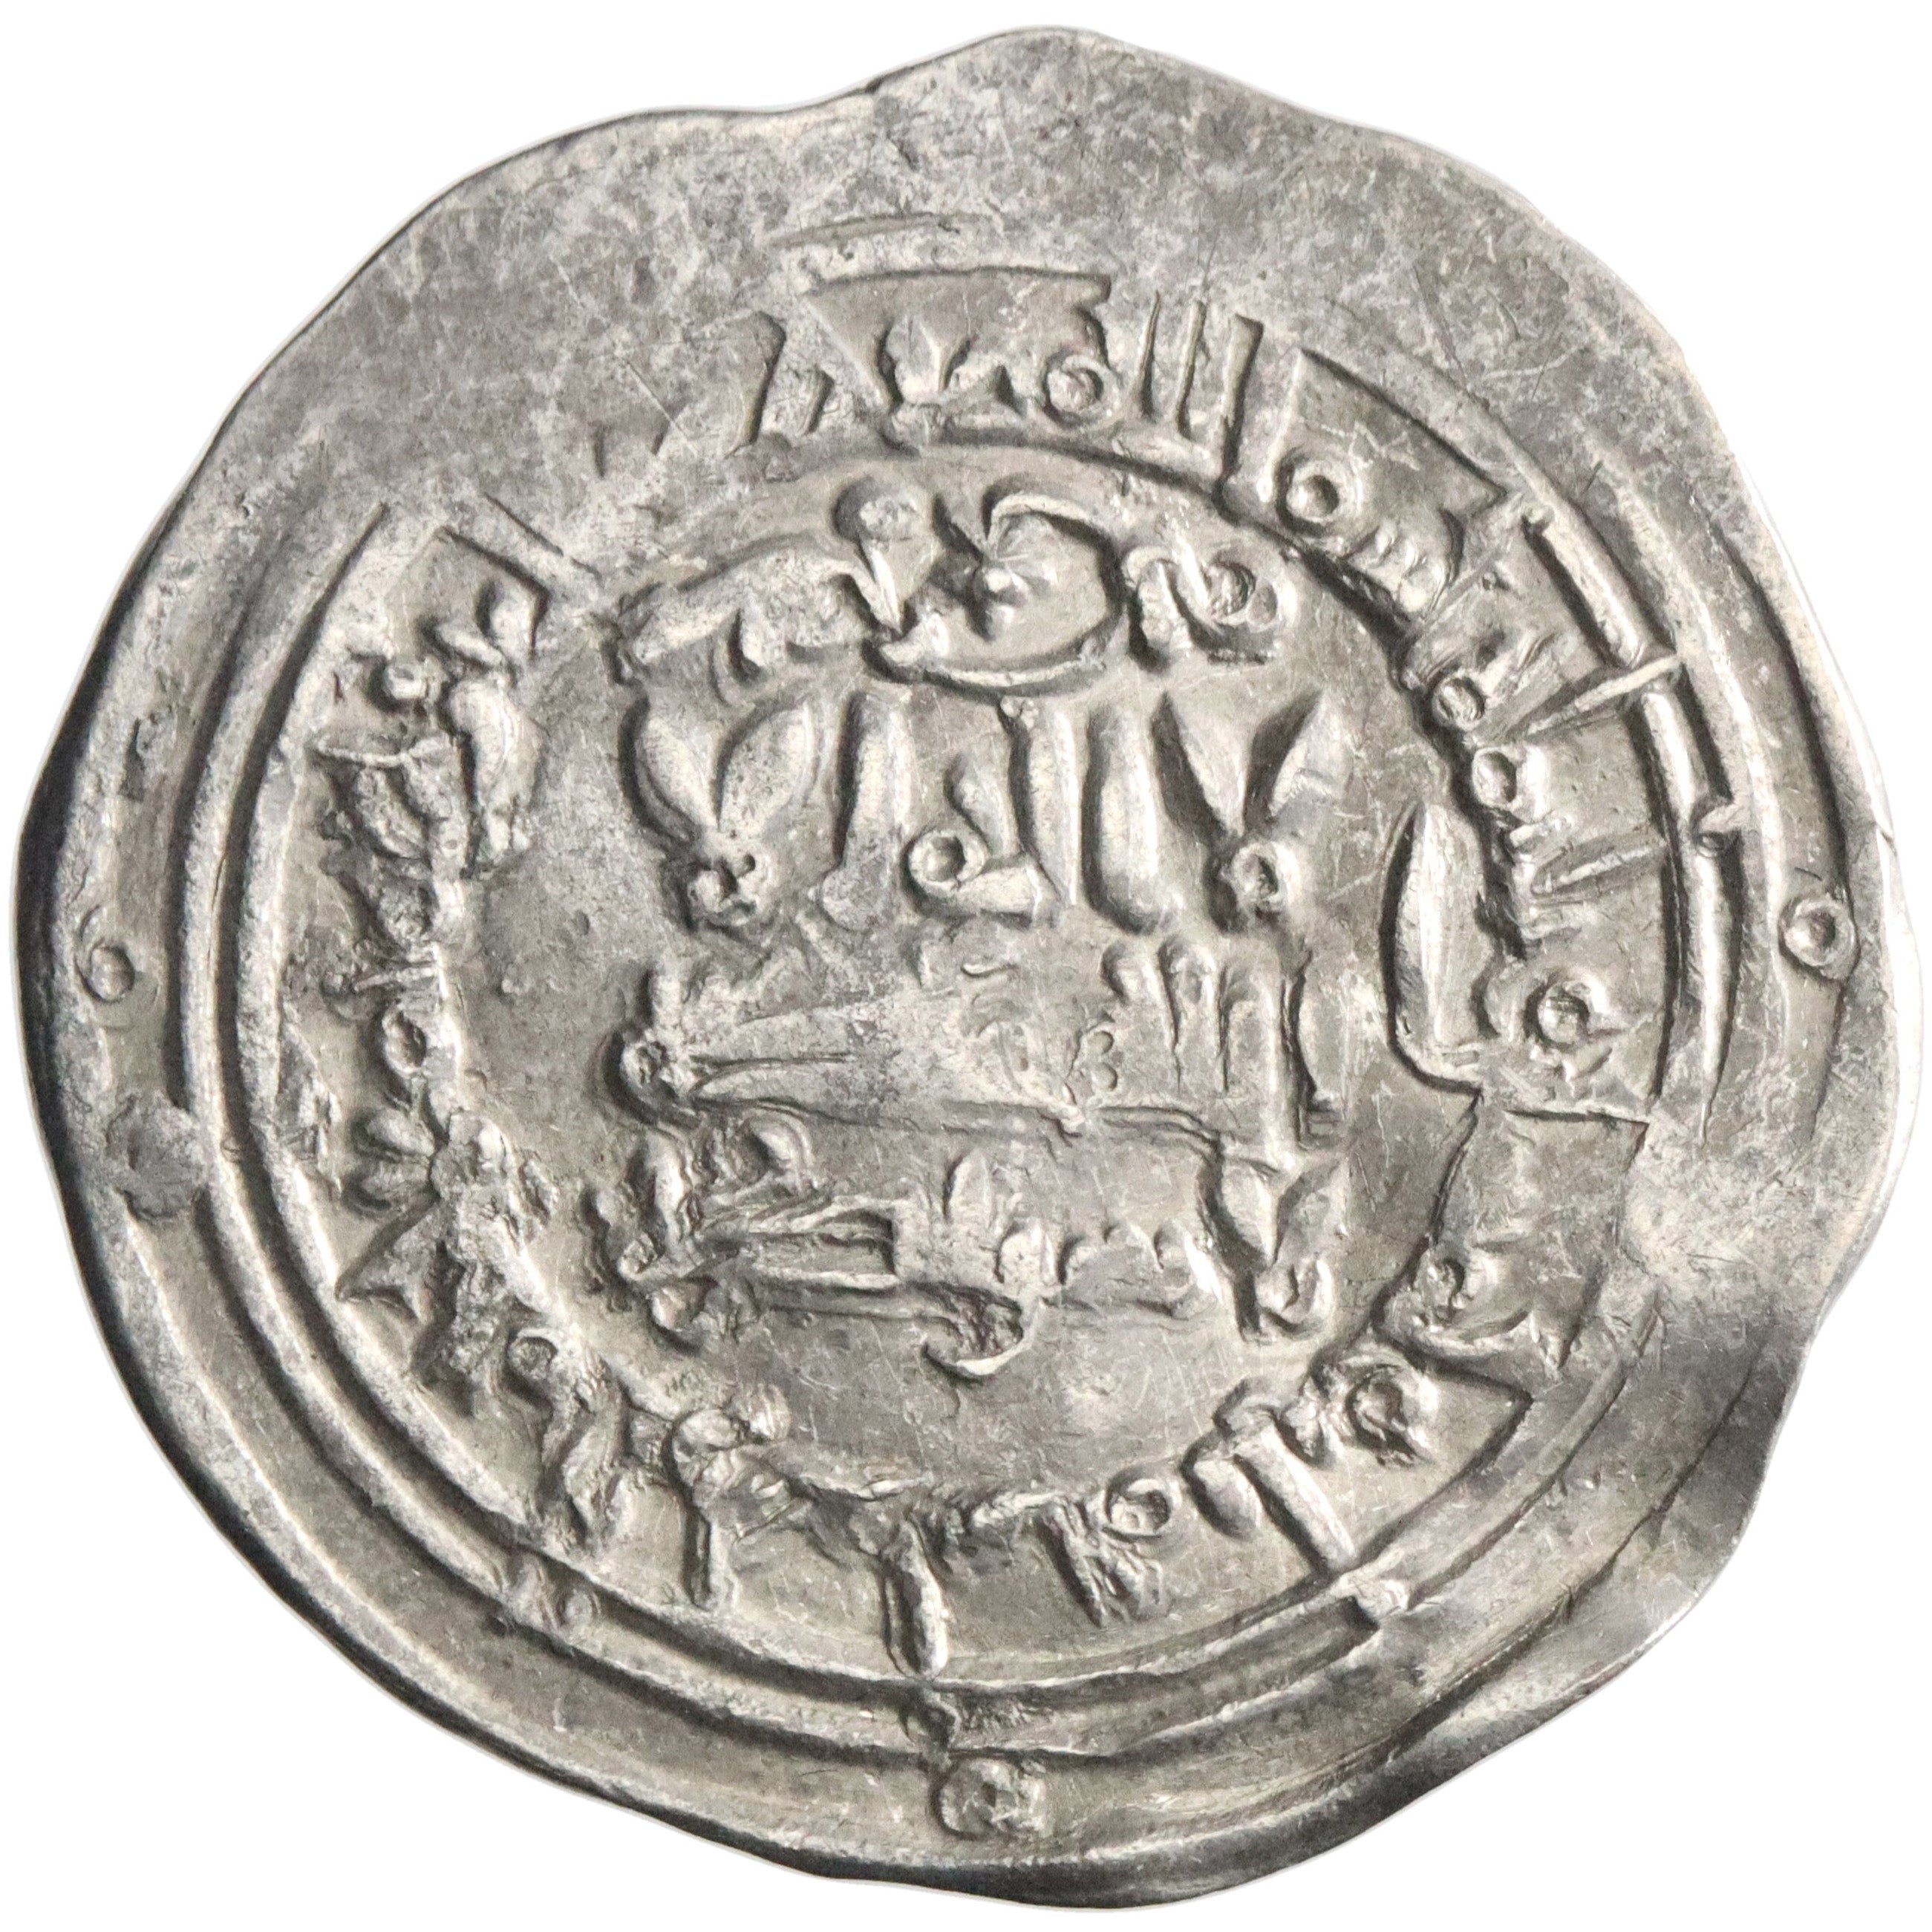 Umayyad of Spain, al-Hakam II, silver dirham, Madinat al-Zahra mint, AH 353, citing 'Abd al-Rahman